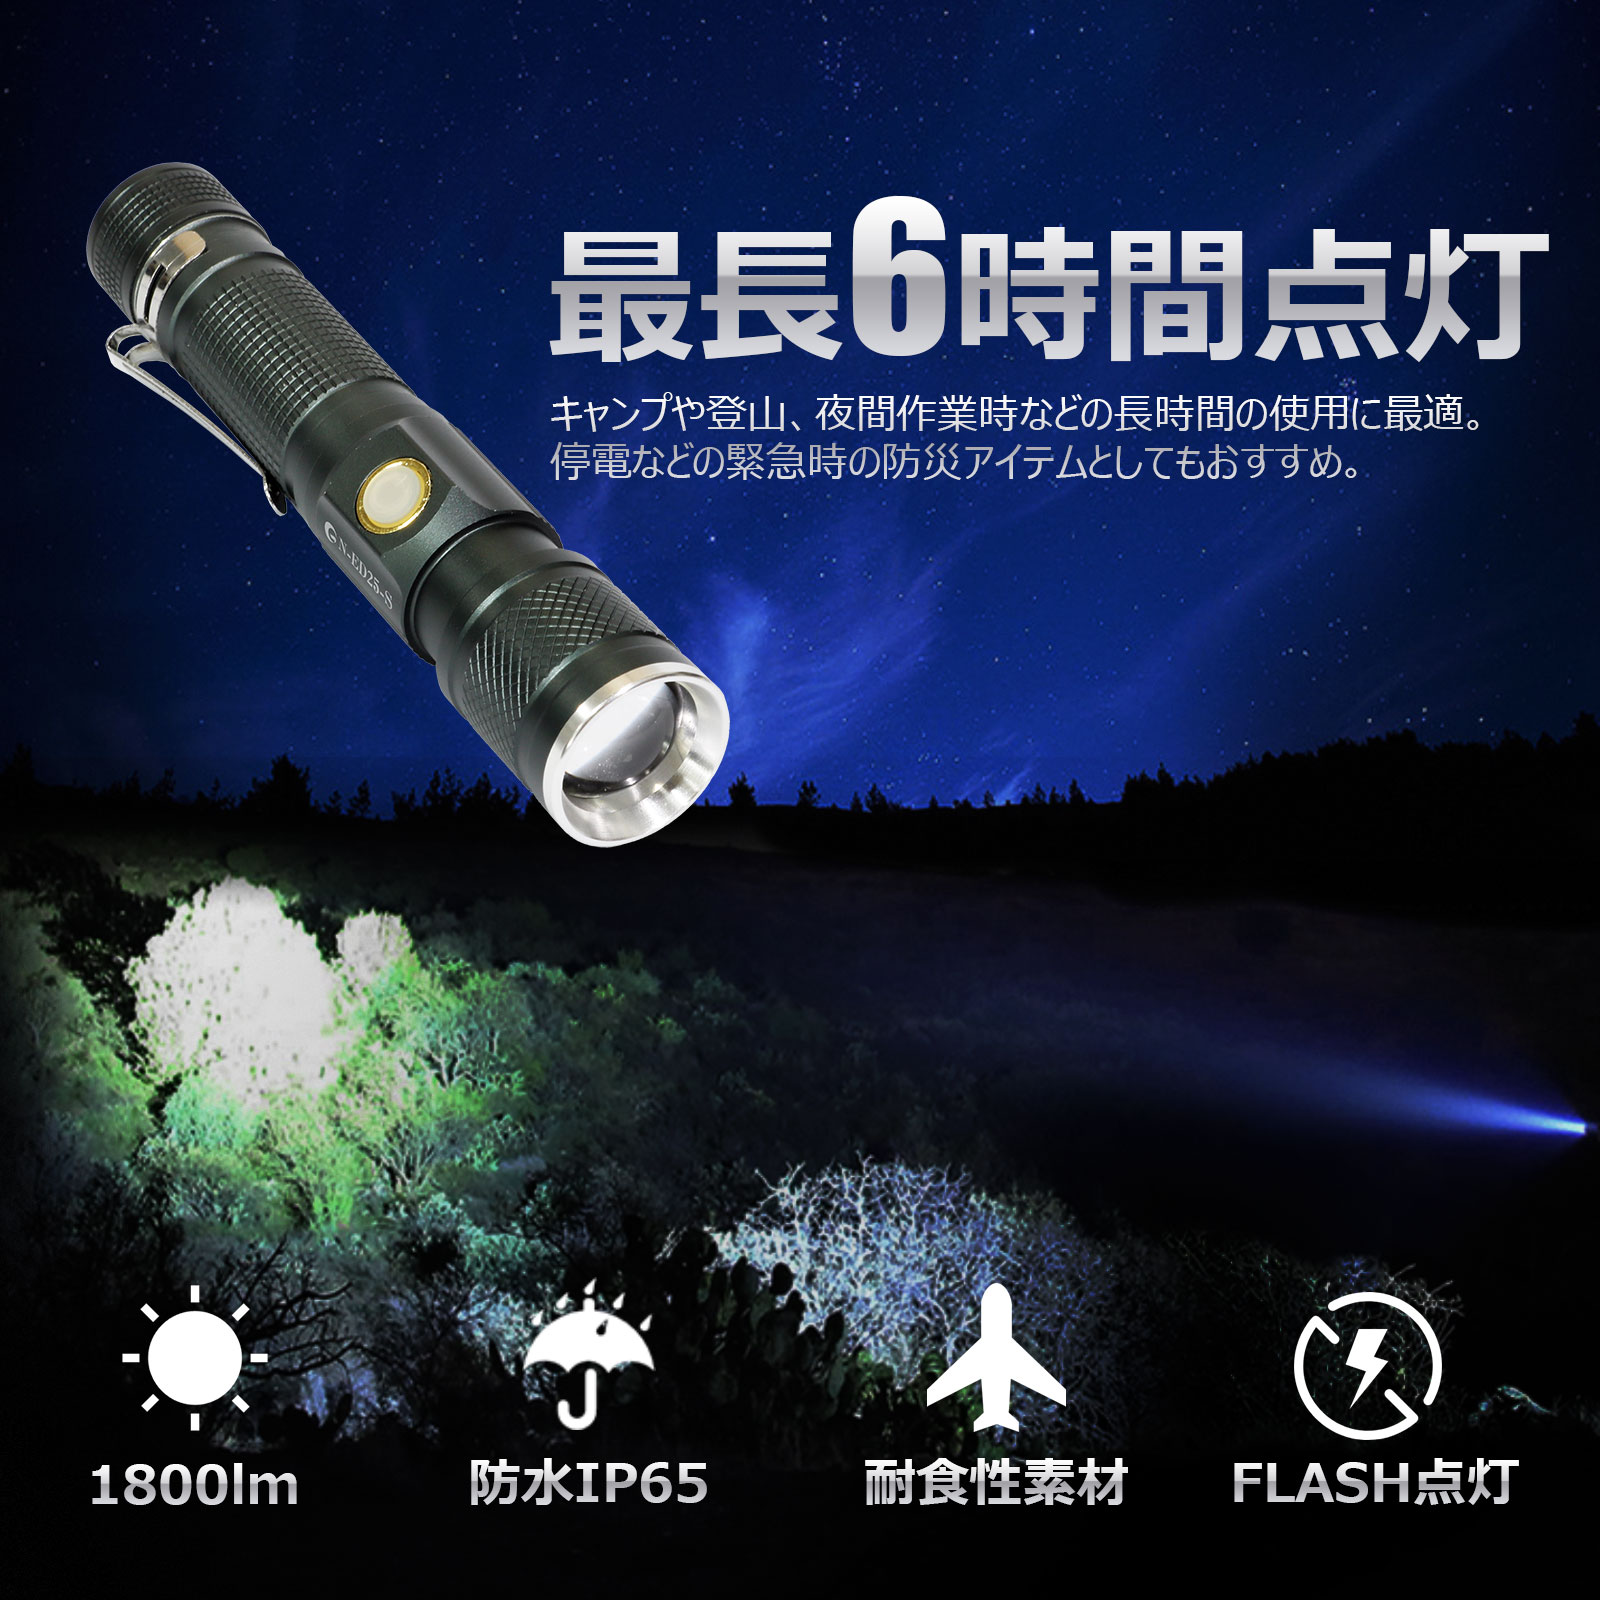 led懐中電灯 強力 サイクルライト 充電式 懐中電灯 充電式 防災用品